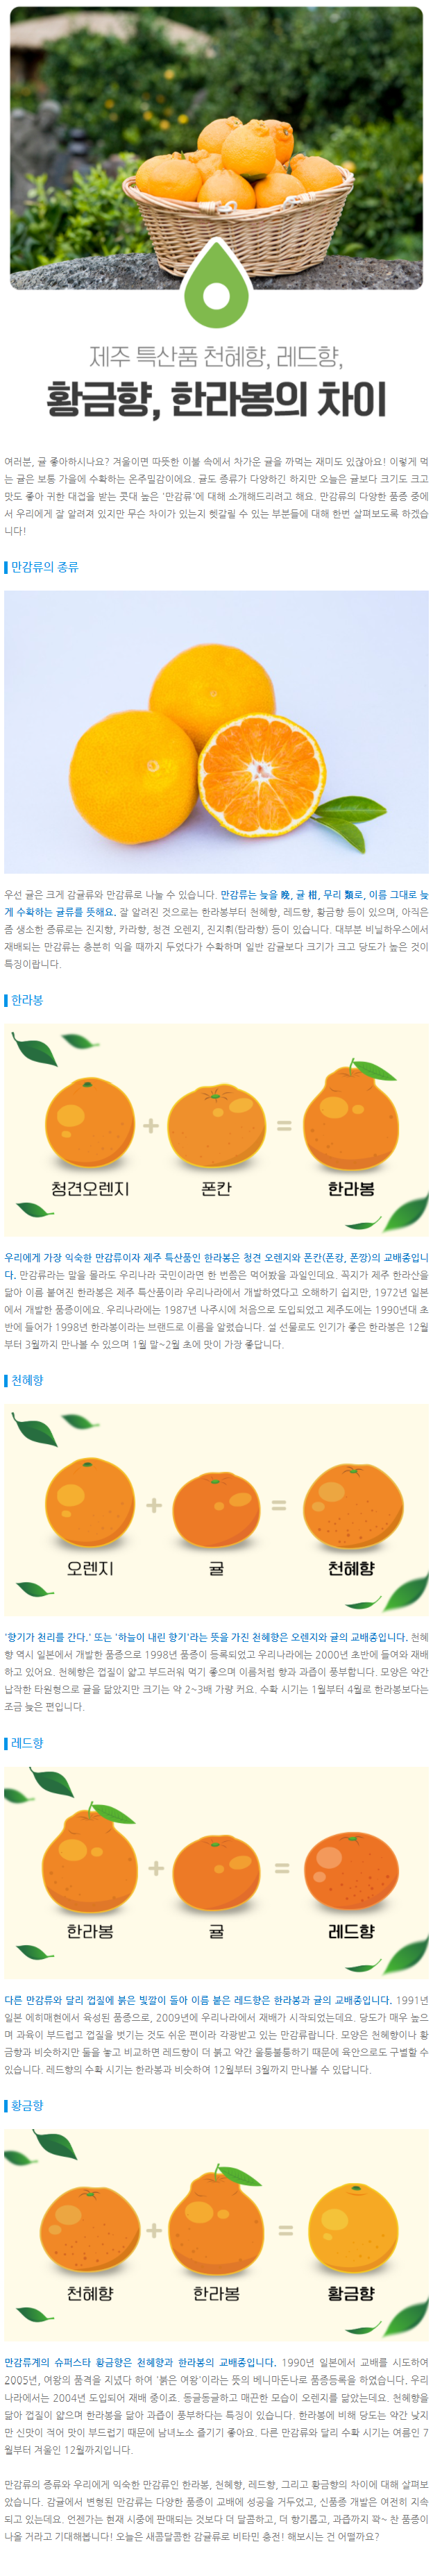 한라봉, 천혜향, 레드향, 황금향 "만감류"의 차이점